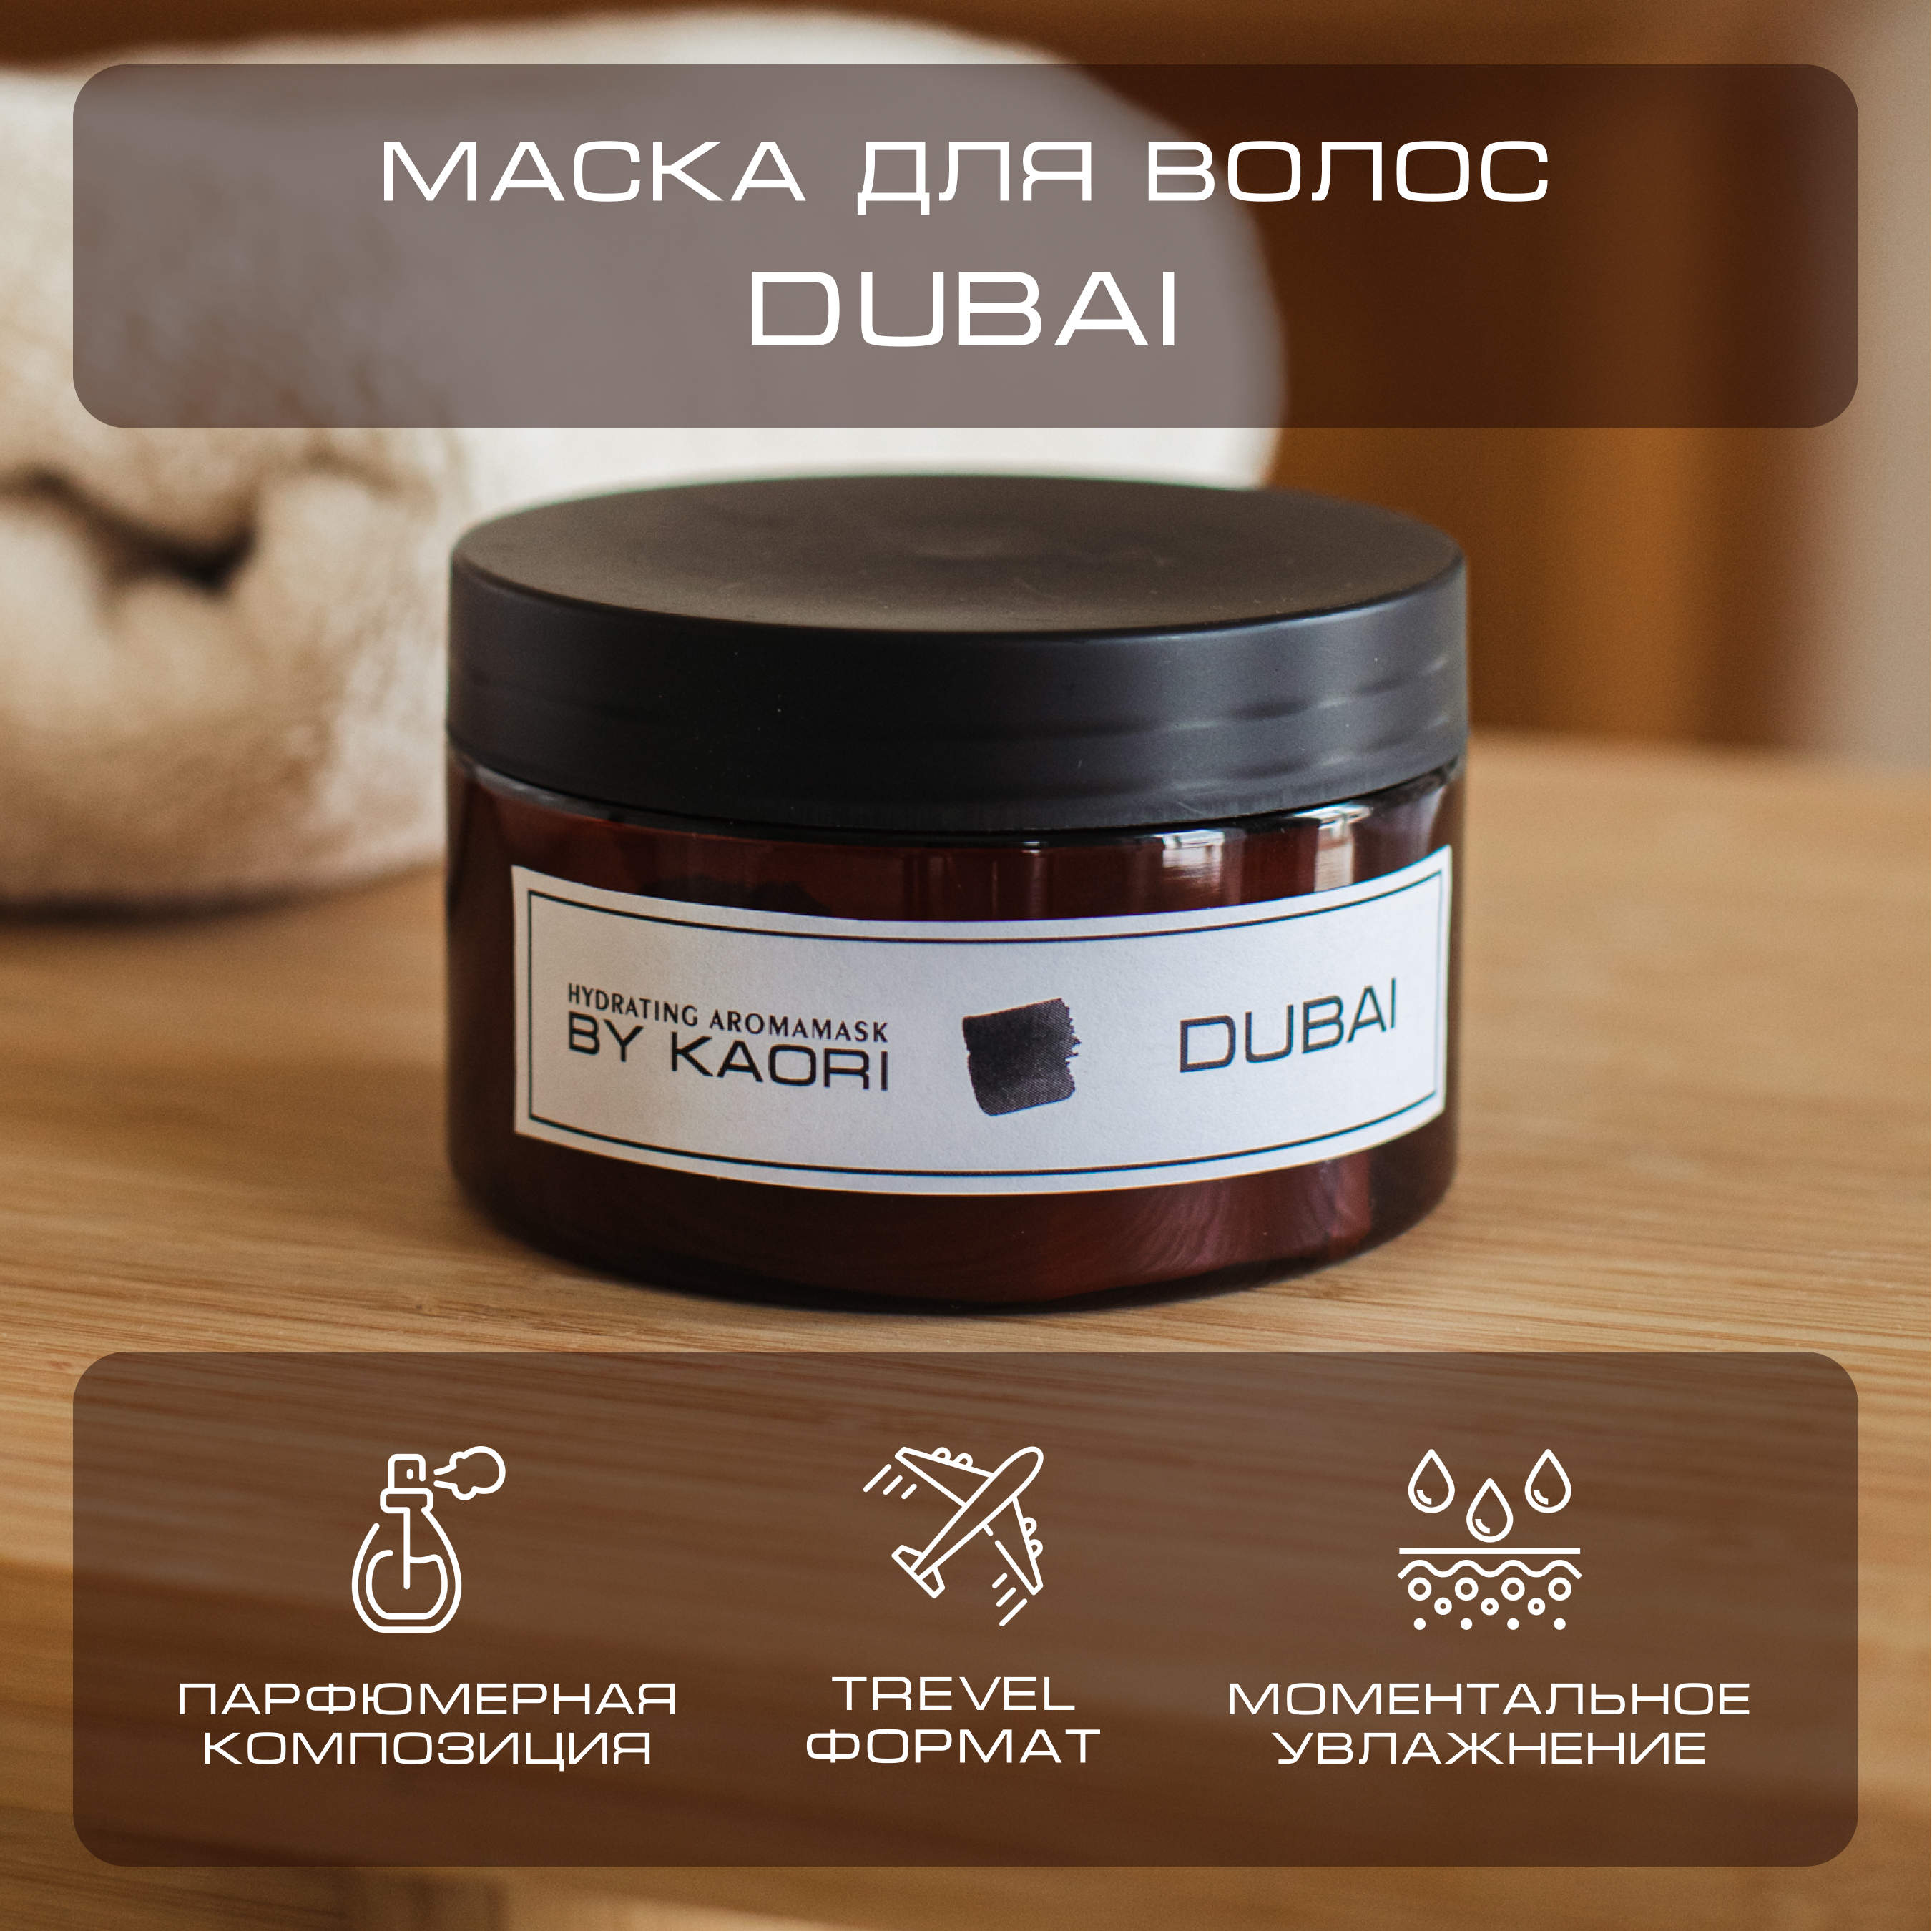 Интенсивная питательная маска для волос By Kaori тревел-формат аромат Dubai 100 мл